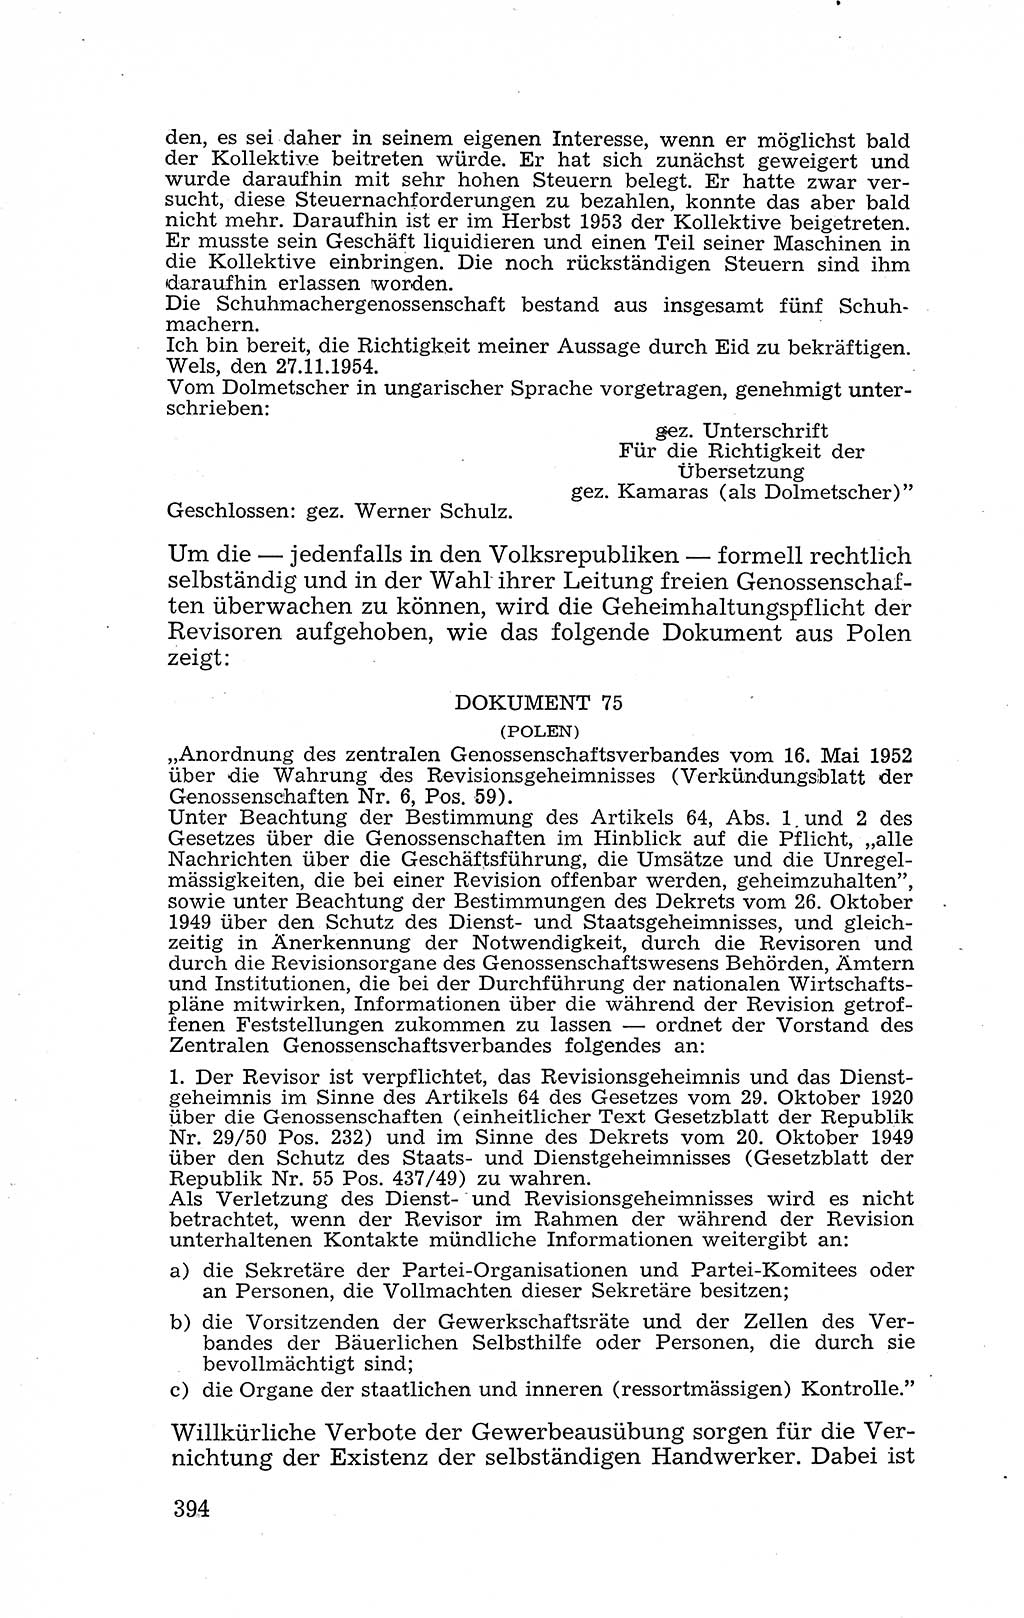 Recht in Fesseln, Dokumente, Internationale Juristen-Kommission [Bundesrepublik Deutschland (BRD)] 1955, Seite 394 (R. Dok. IJK BRD 1955, S. 394)